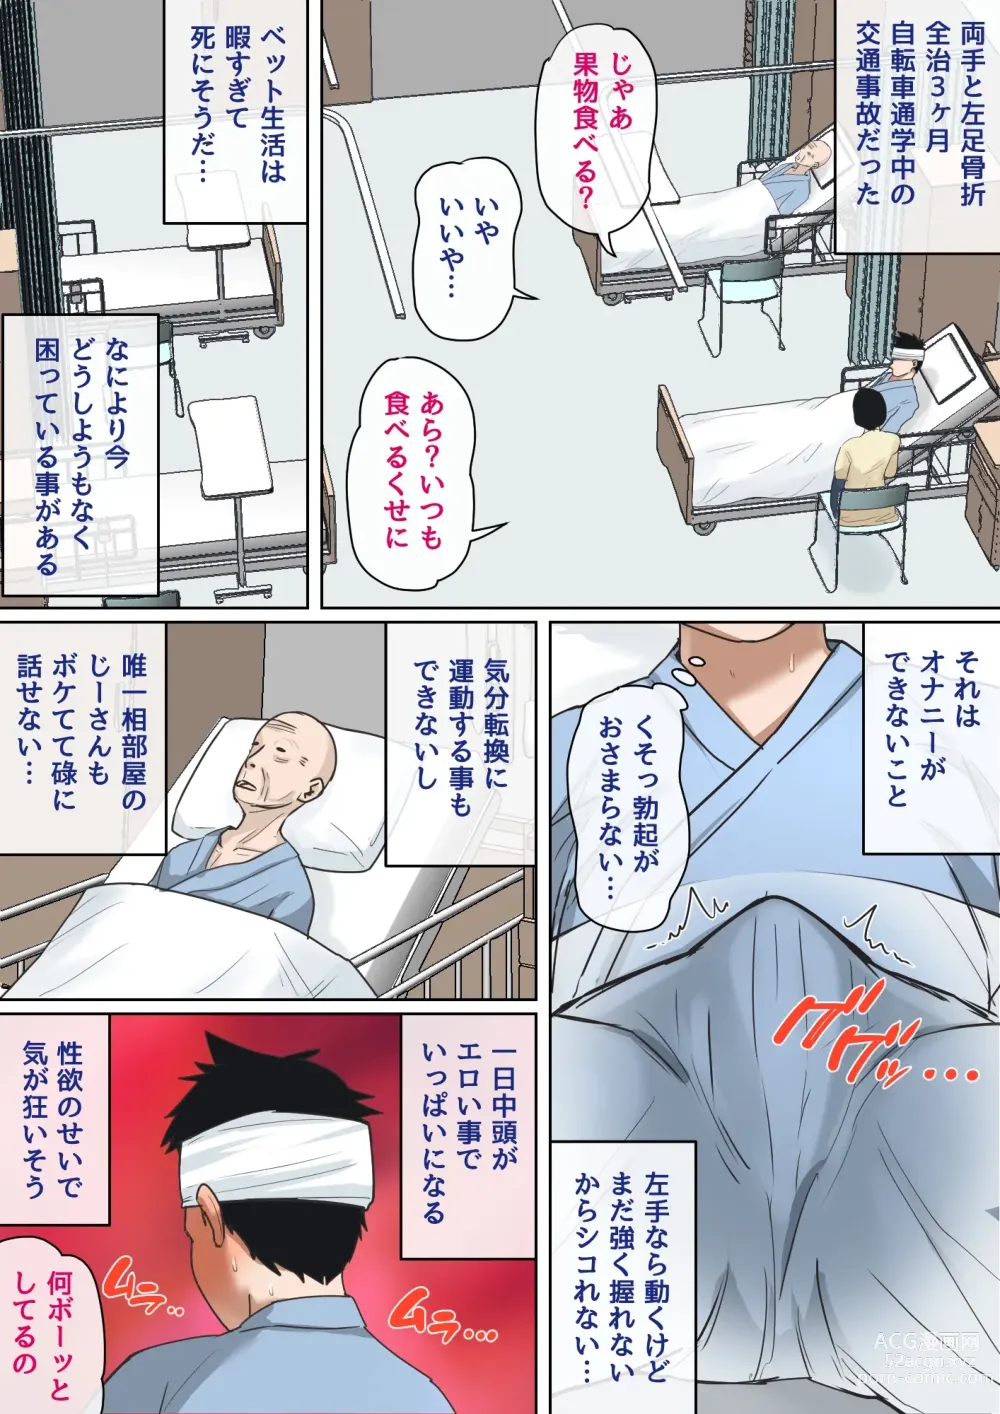 Page 2 of doujinshi Nyuuin-chuu no Muramura wa...